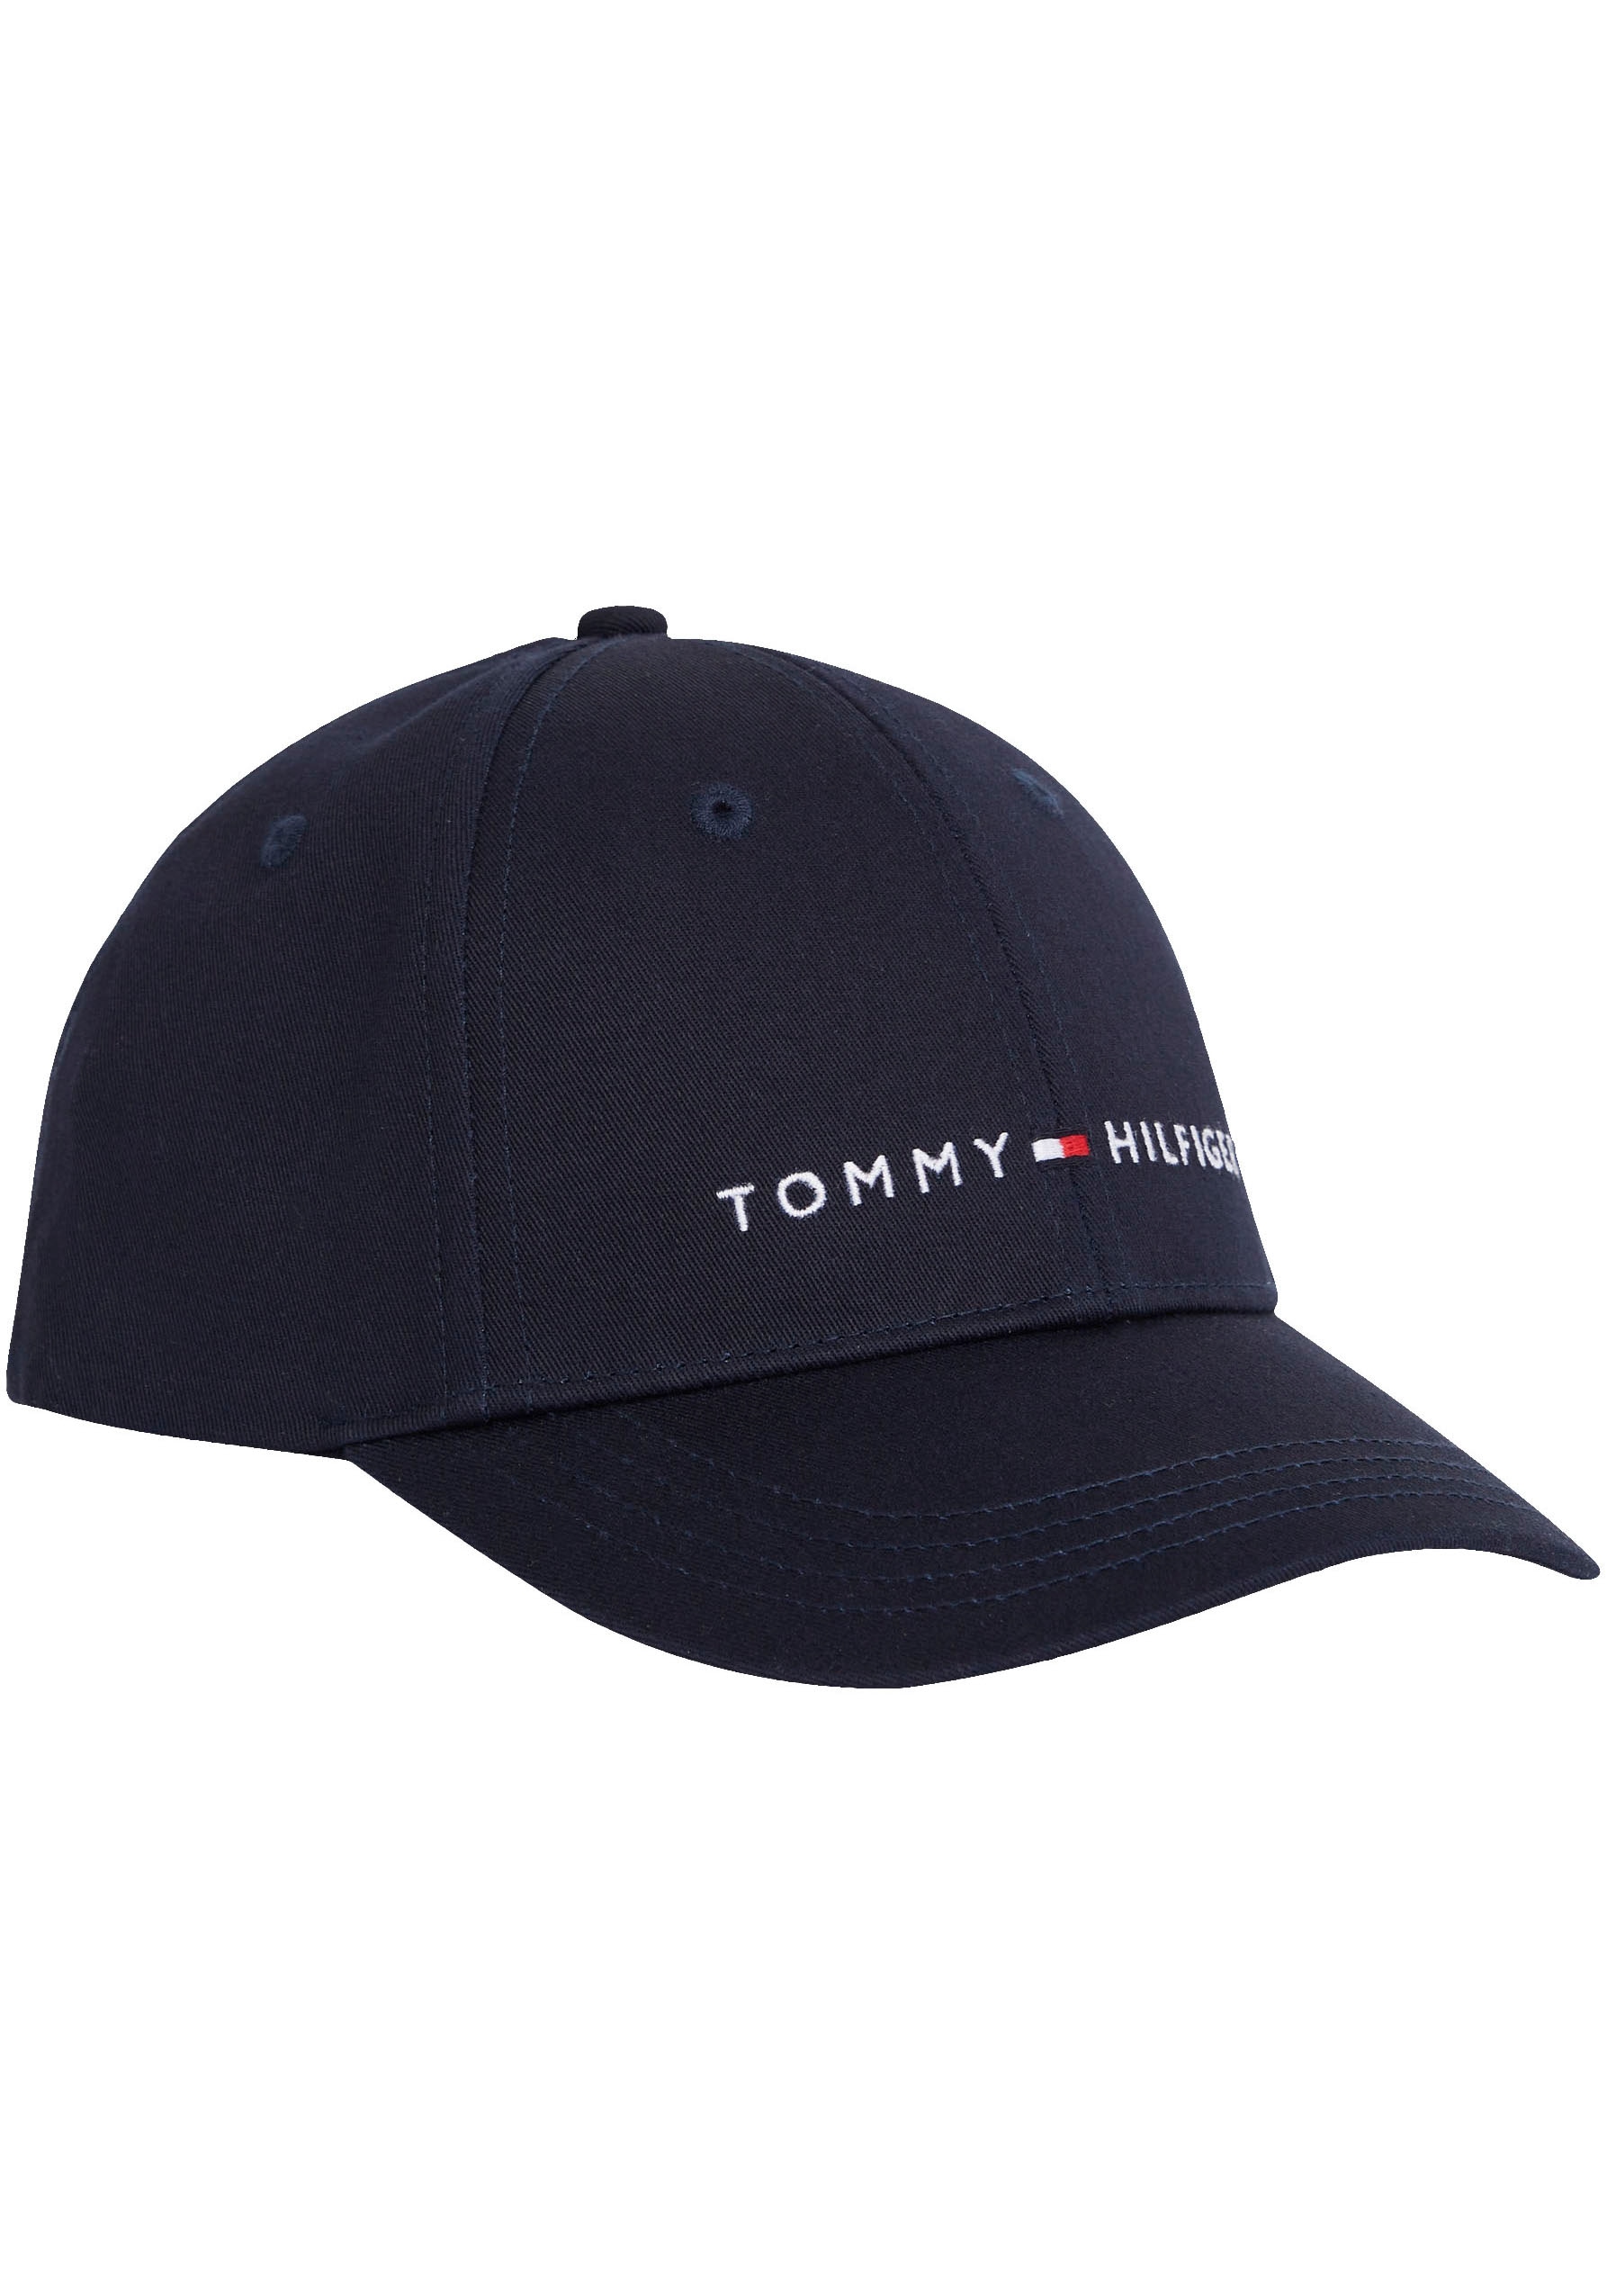 Tommy Hilfiger Snapback Cap, Kinder Essential online kaufen Cap mit verstellbare Branding | BAUR